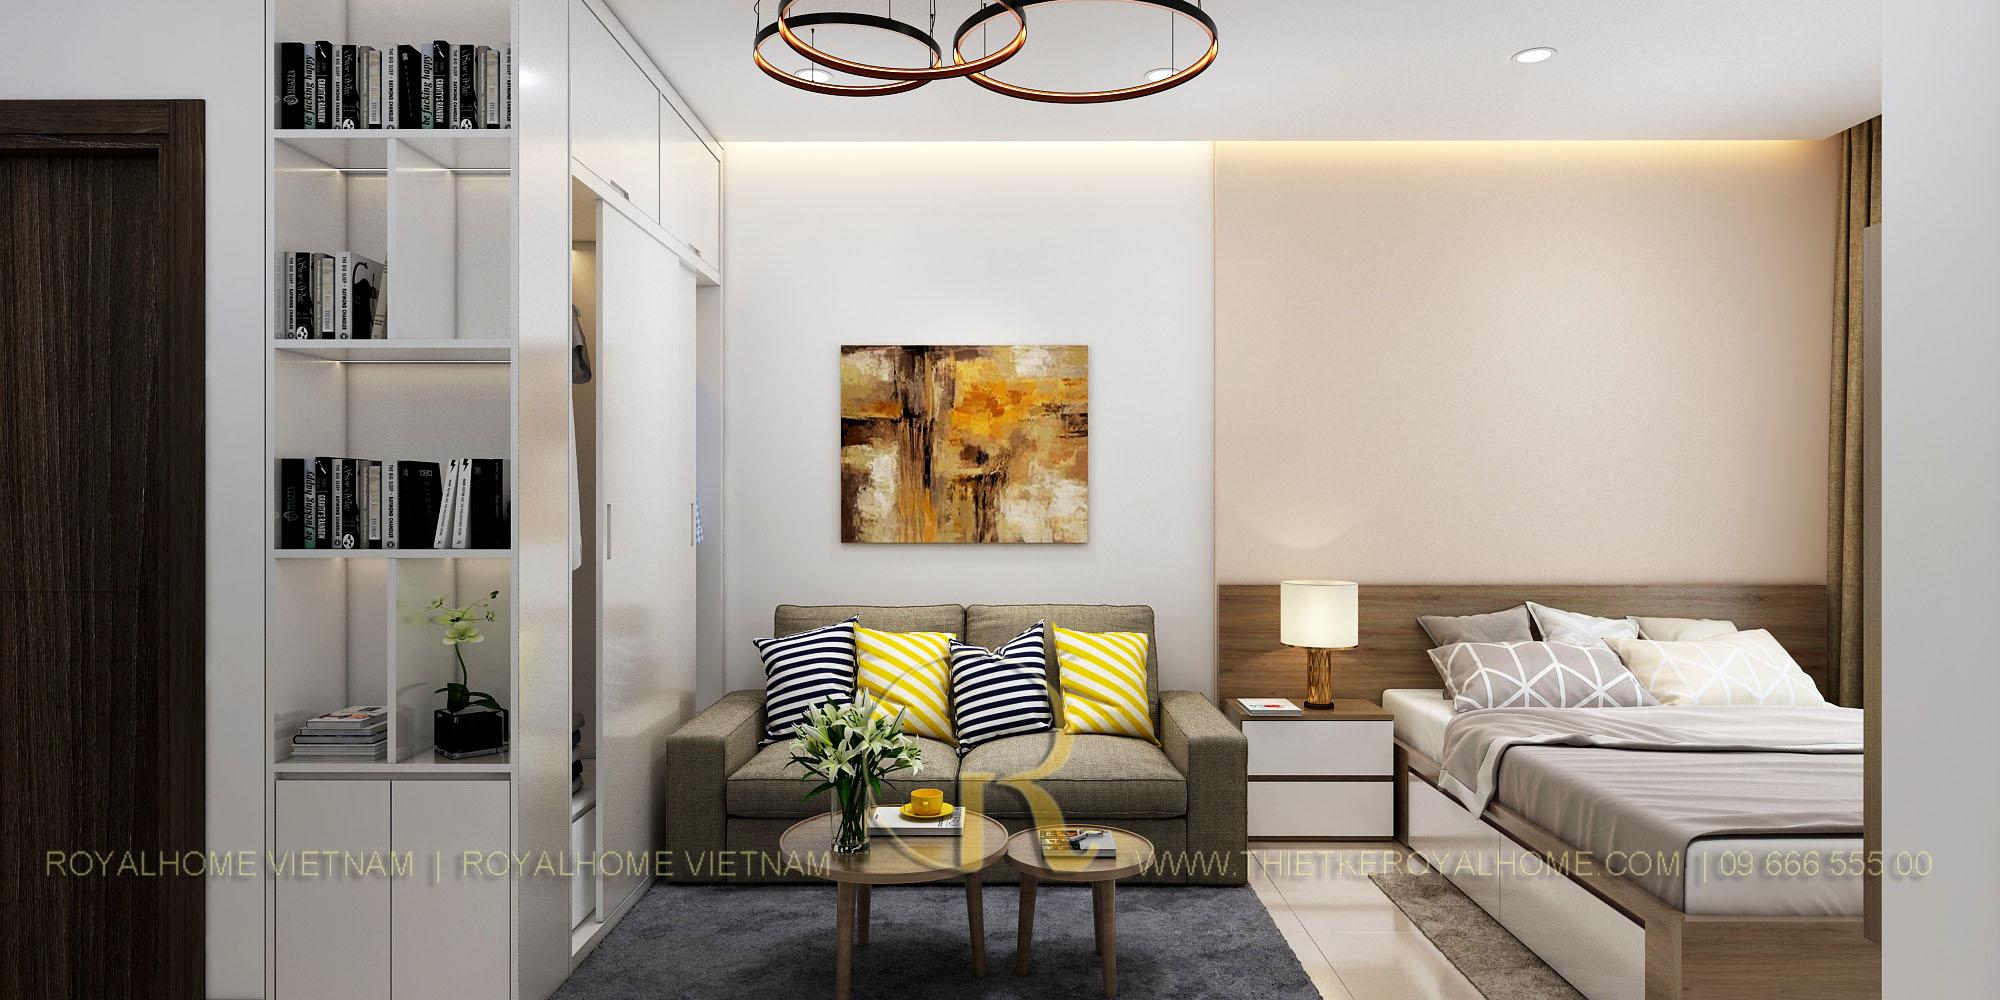 Bạn đang tìm kiếm một căn hộ phù hợp cho bản thân? Hãy xem ngay bức hình về căn hộ Studio 28m2 tuyệt đẹp với đầy đủ tiện nghi và không gian rộng rãi sẽ khiến bạn choáng ngợp.